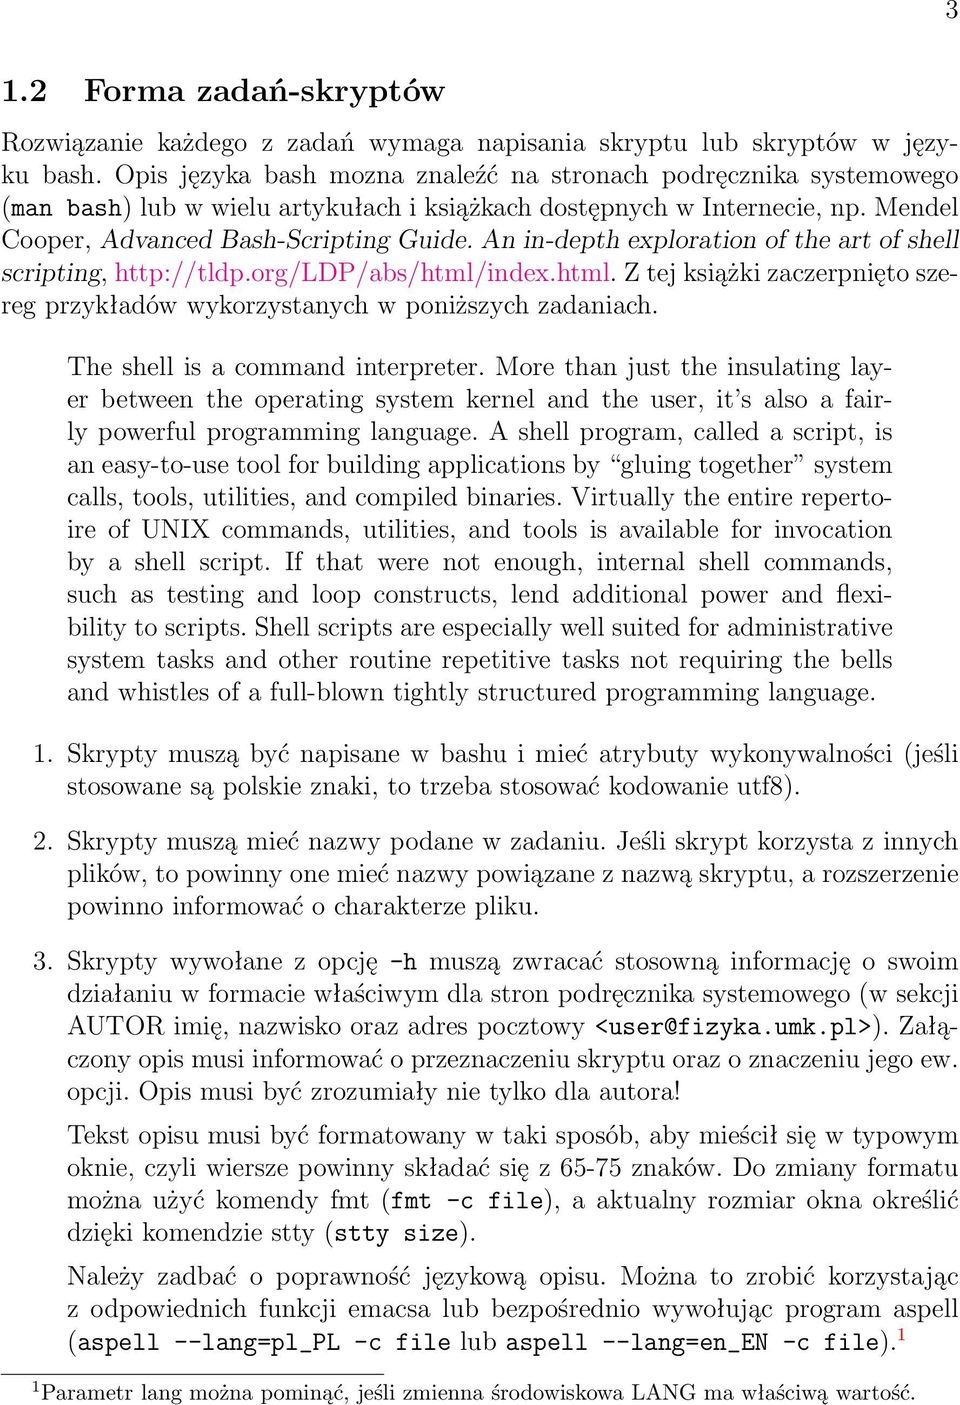 An in-depth exploration of the art of shell scripting, http://tldp.org/ldp/abs/html/index.html. Z tej książki zaczerpnięto szereg przykładów wykorzystanych w poniższych zadaniach.